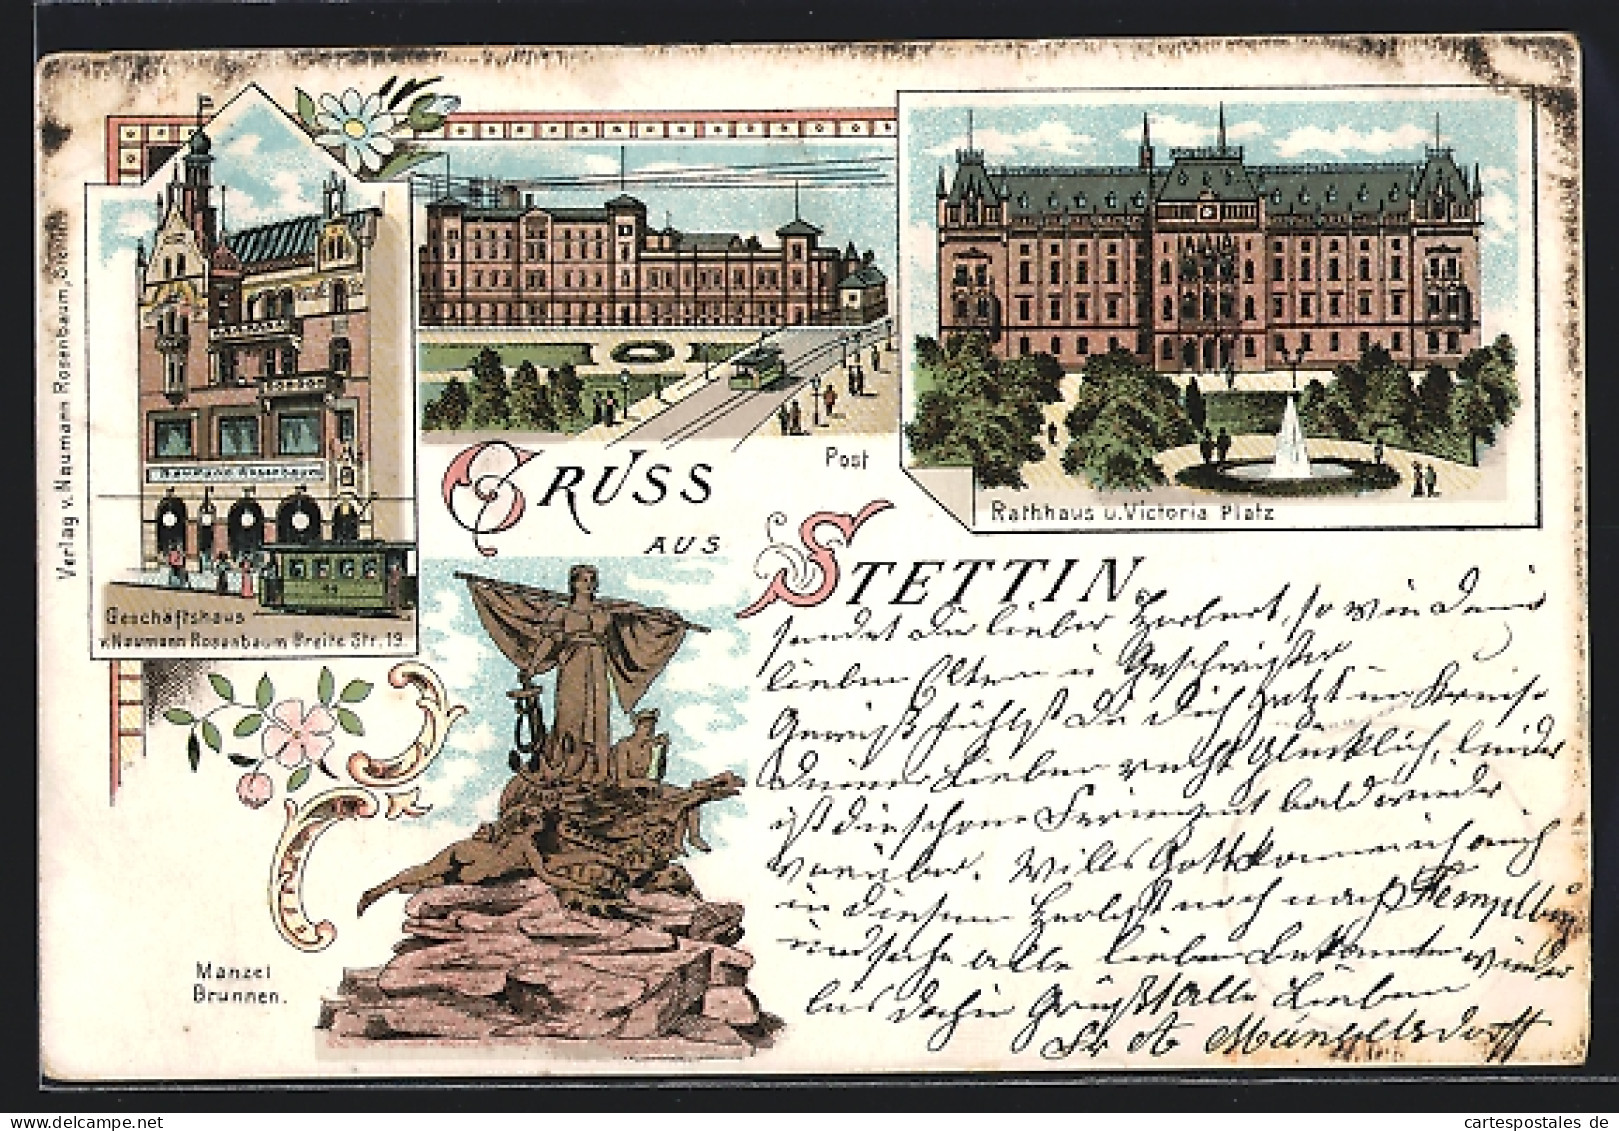 Lithographie Stettin, Geschäftshaus V. Naumann Rosenbaum, Breite Strasse 19, Post, Manzel-Brunnen  - Pommern